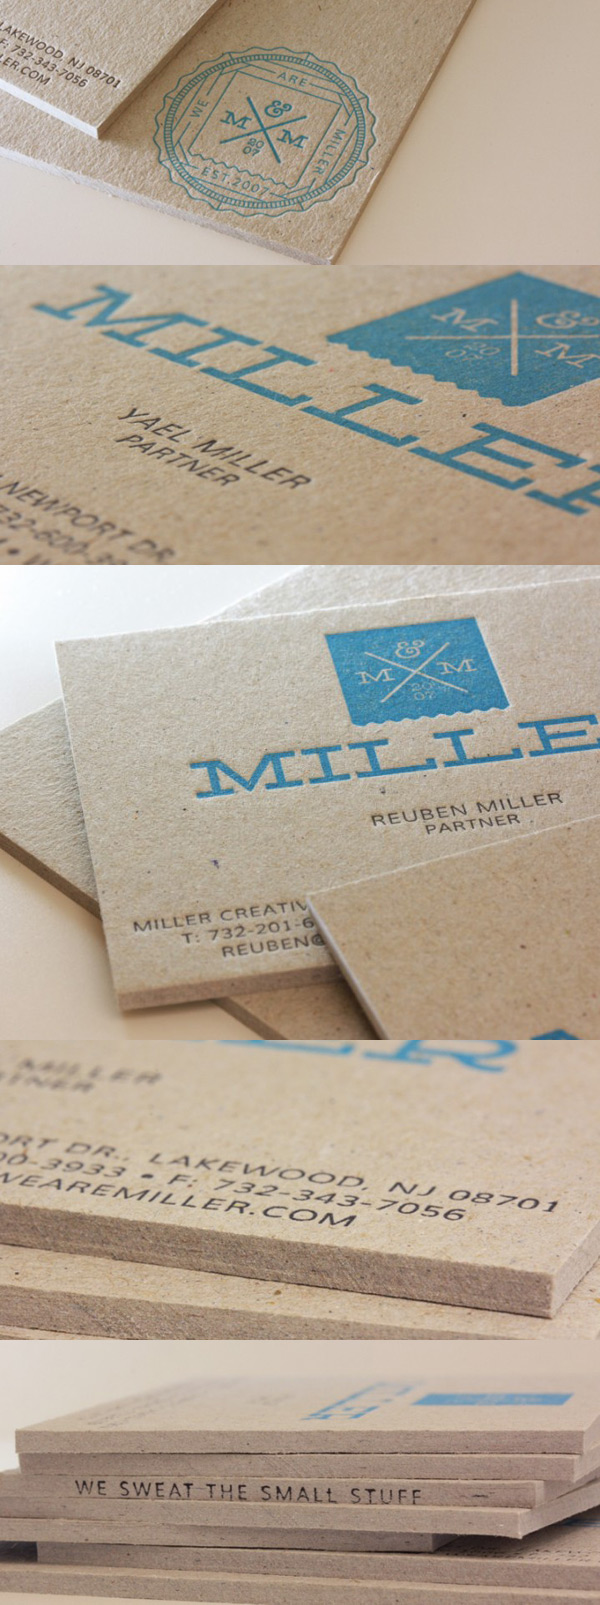 Miller Branding Agency's Letterpress Business Cards